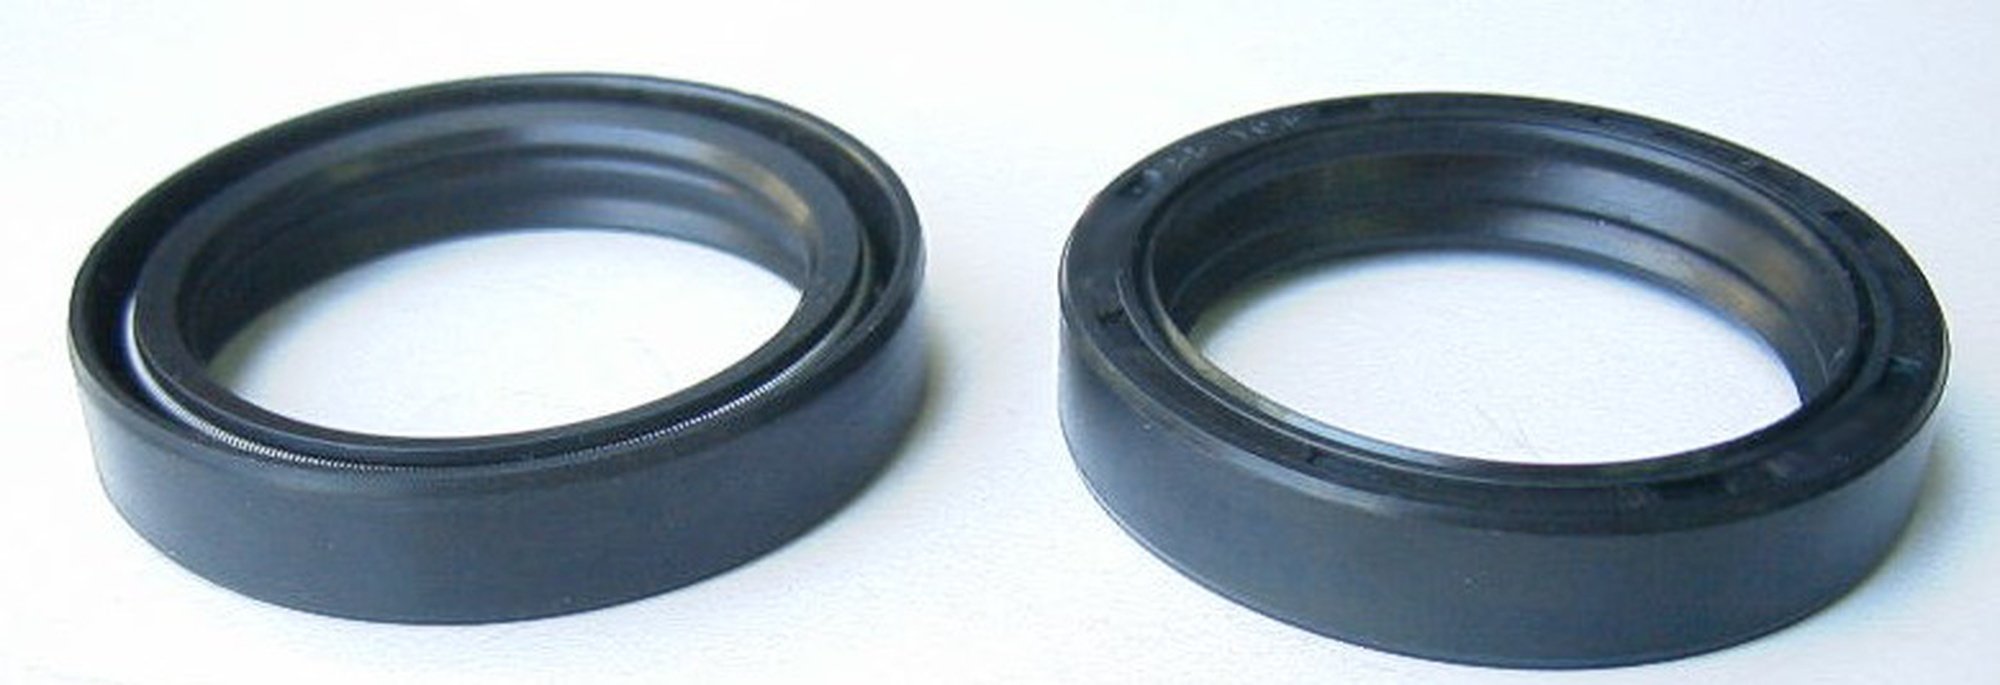 Obrázek produktu simeringy do přední vidlice (43x55x10,5 mm), Tourmax